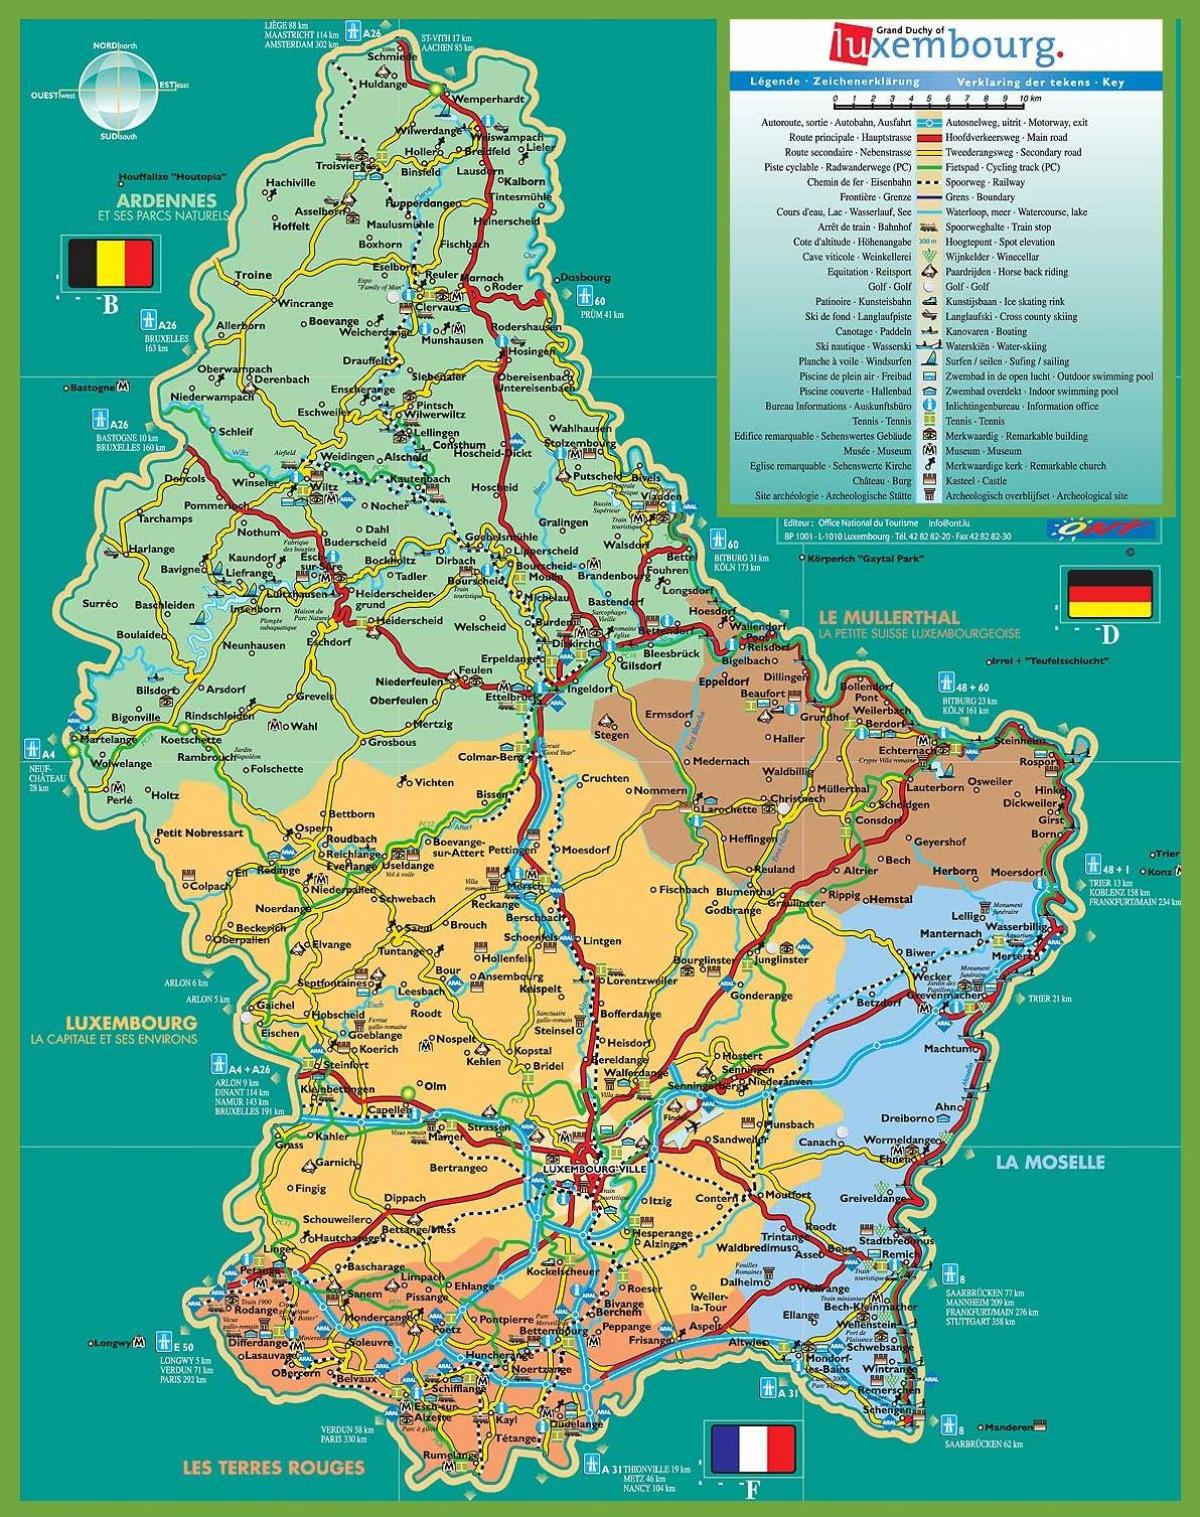 Mapa turístico de la ciudad de luxemburgo